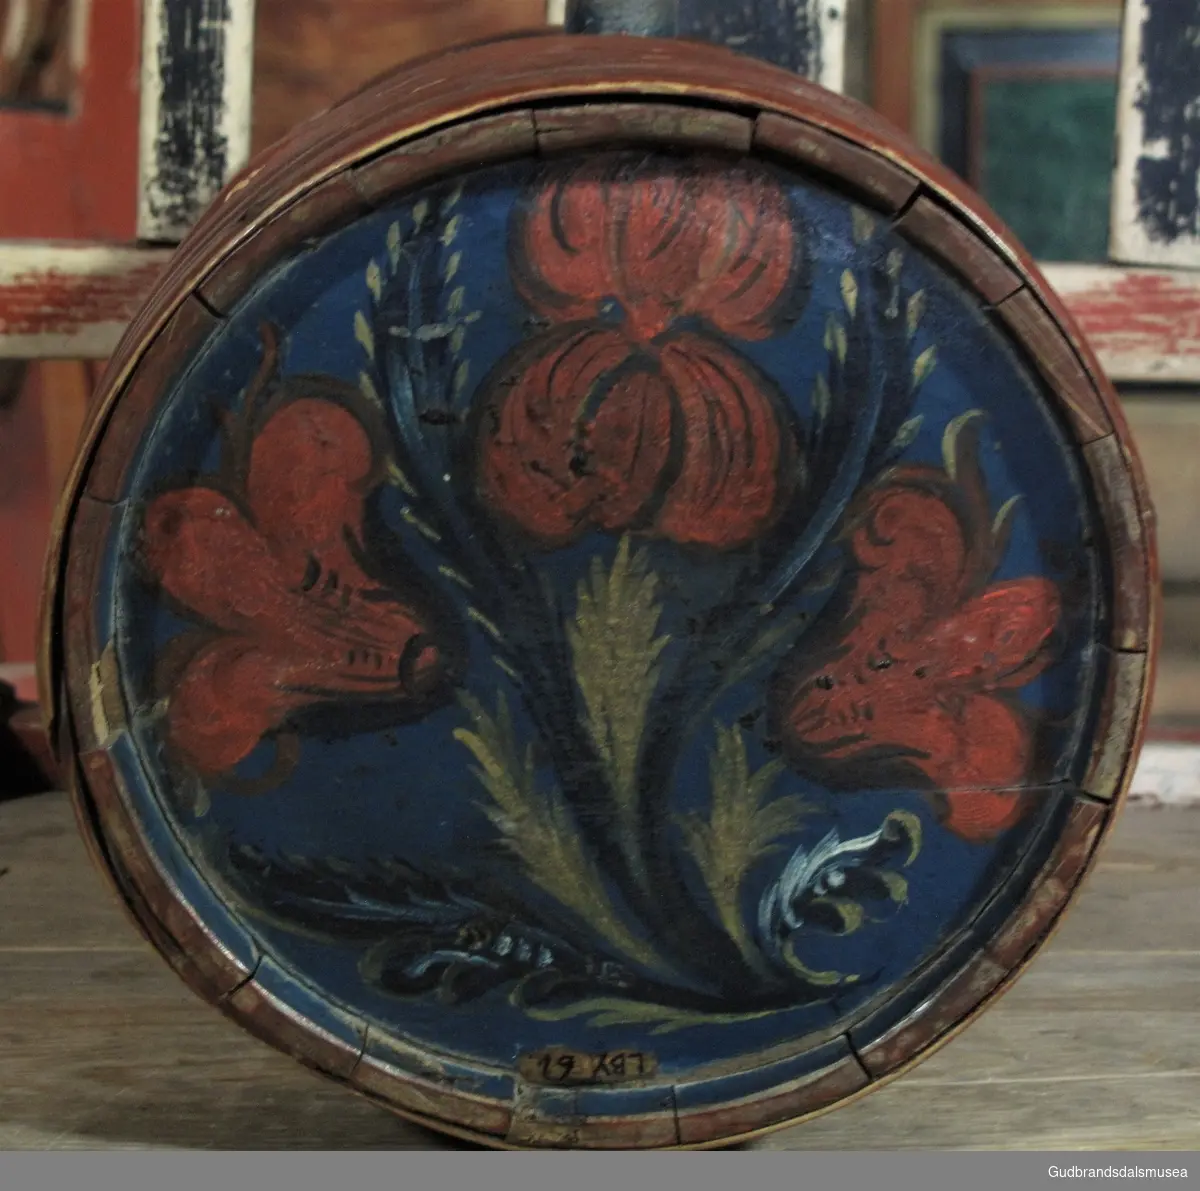 Liten brennevinsdunk i tre med tut av bly; fra Dovre tidlig på 1800-tallet. Rosemalt i rokokkostil dominert av blomstermotiv.